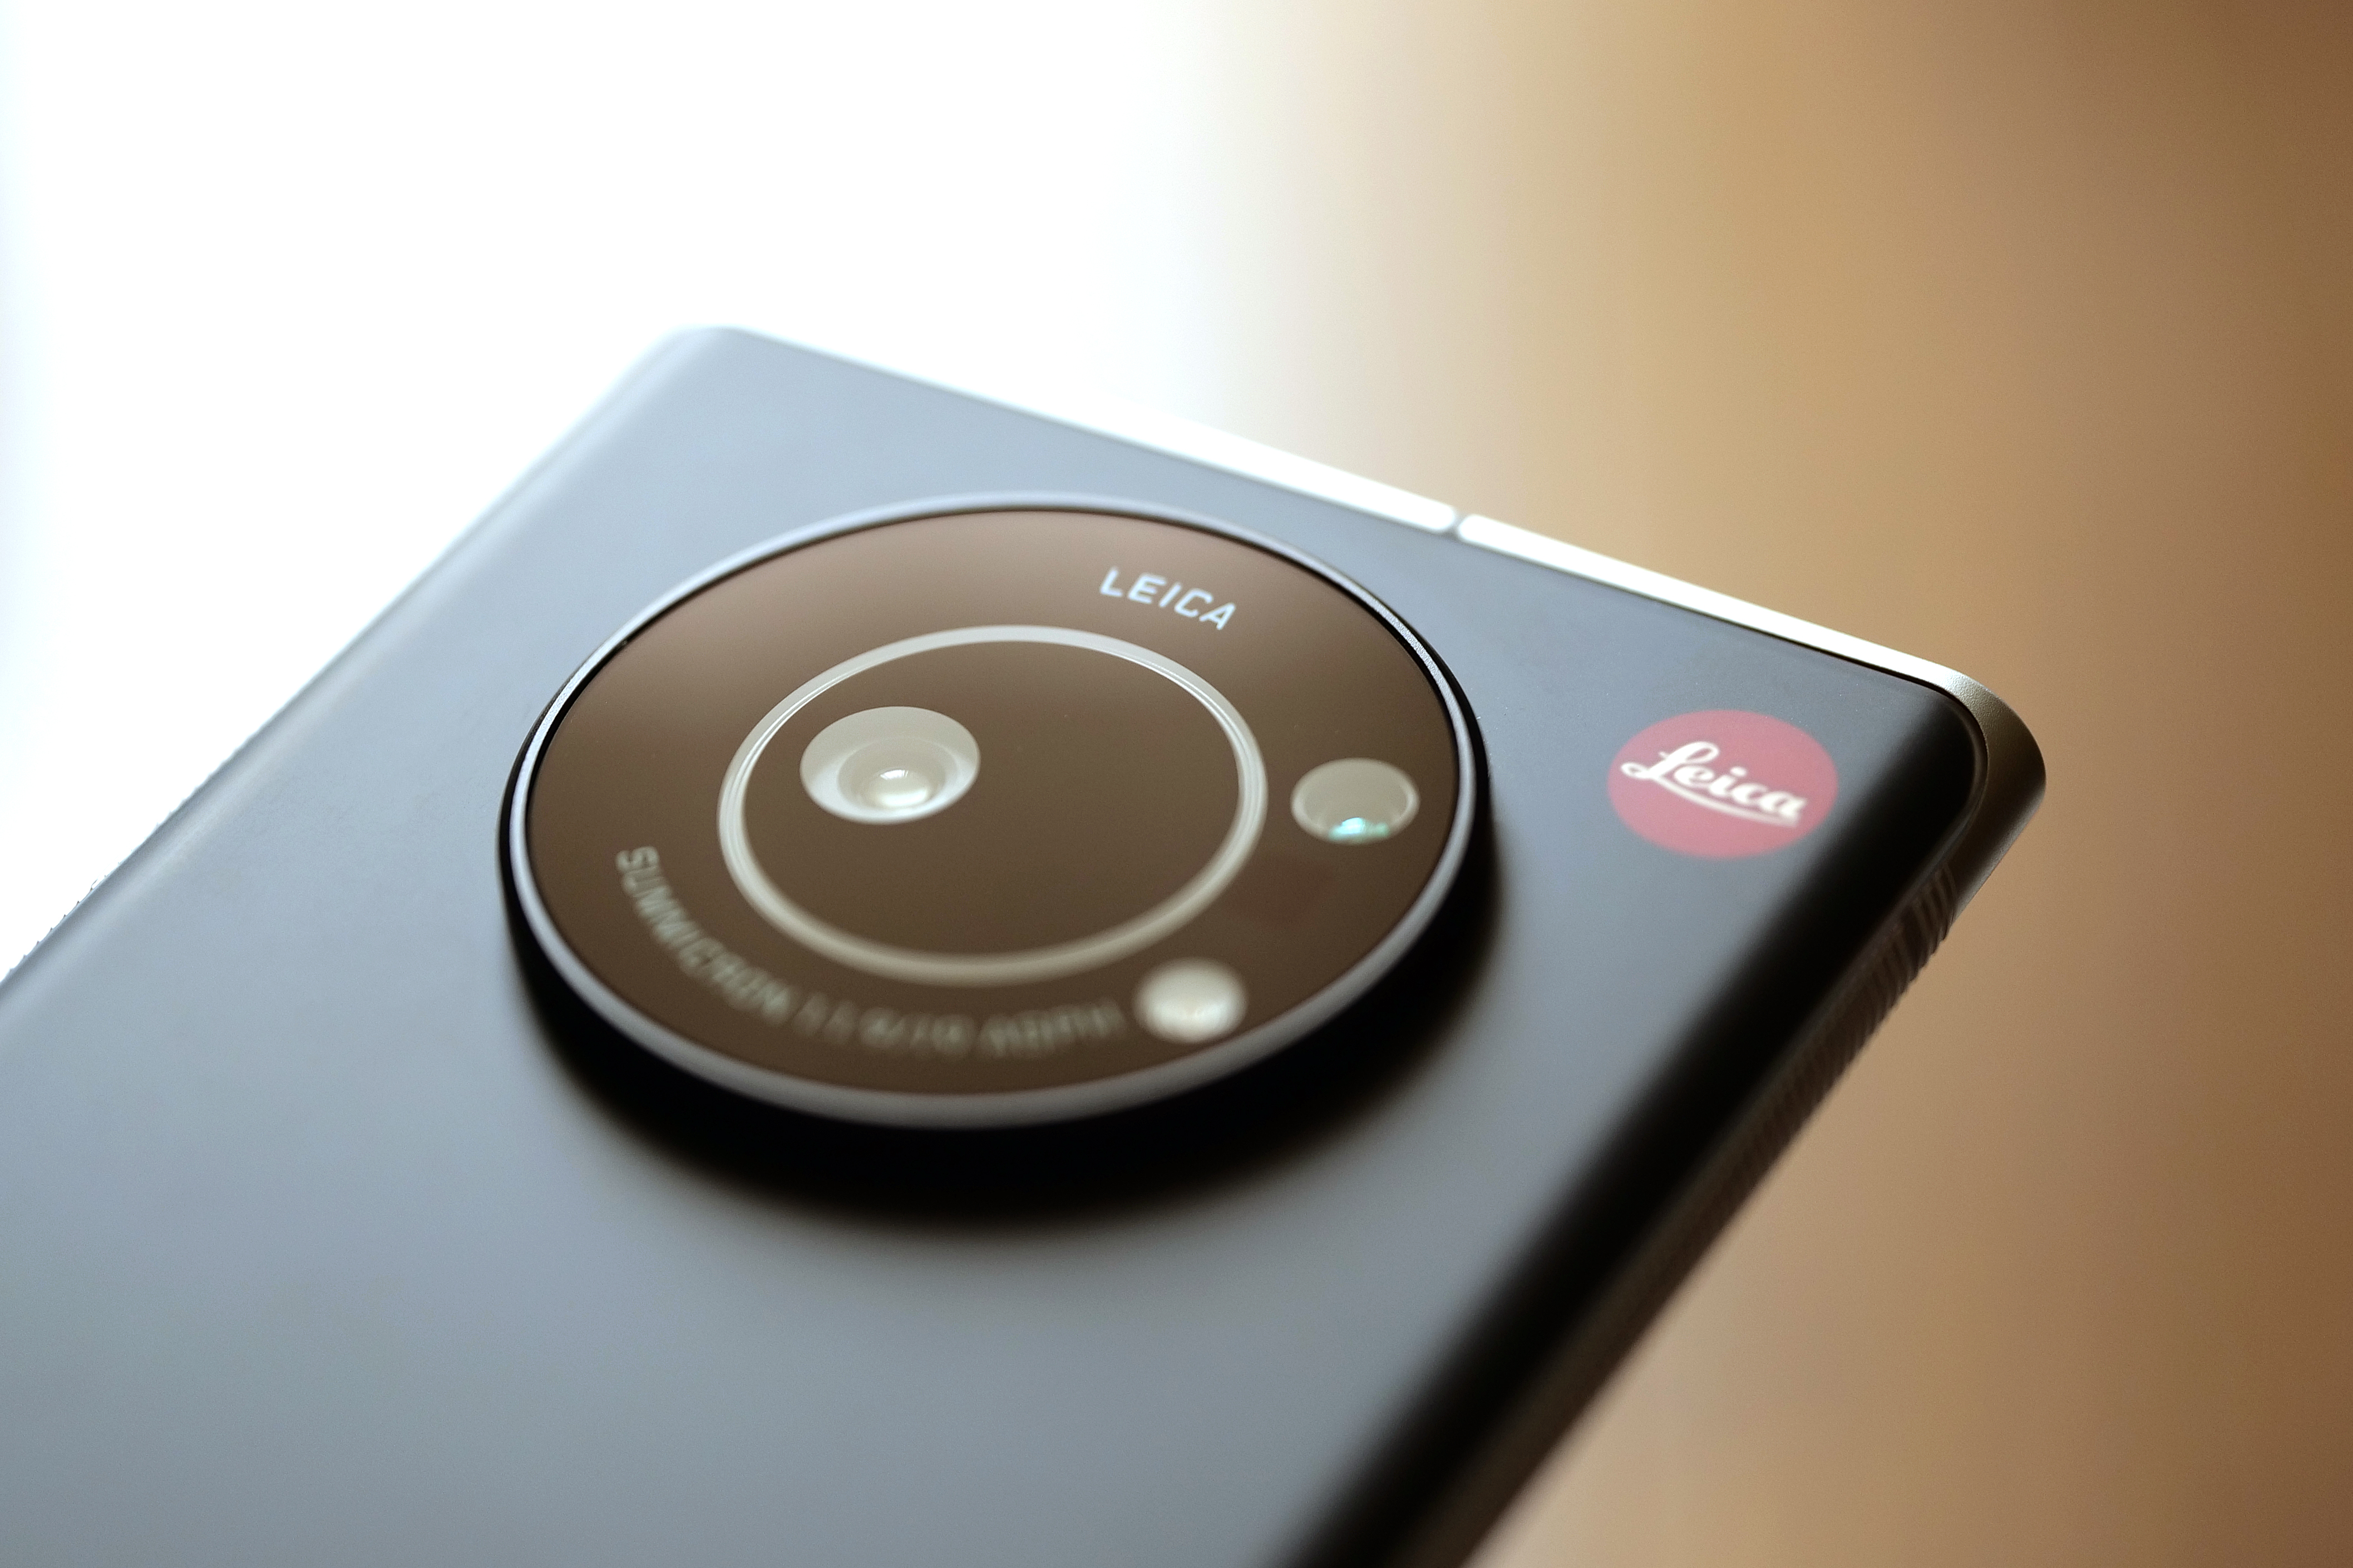 ライカ初のスマートフォン「Leitz Phone 1 」を試す] - ケータイ Watch